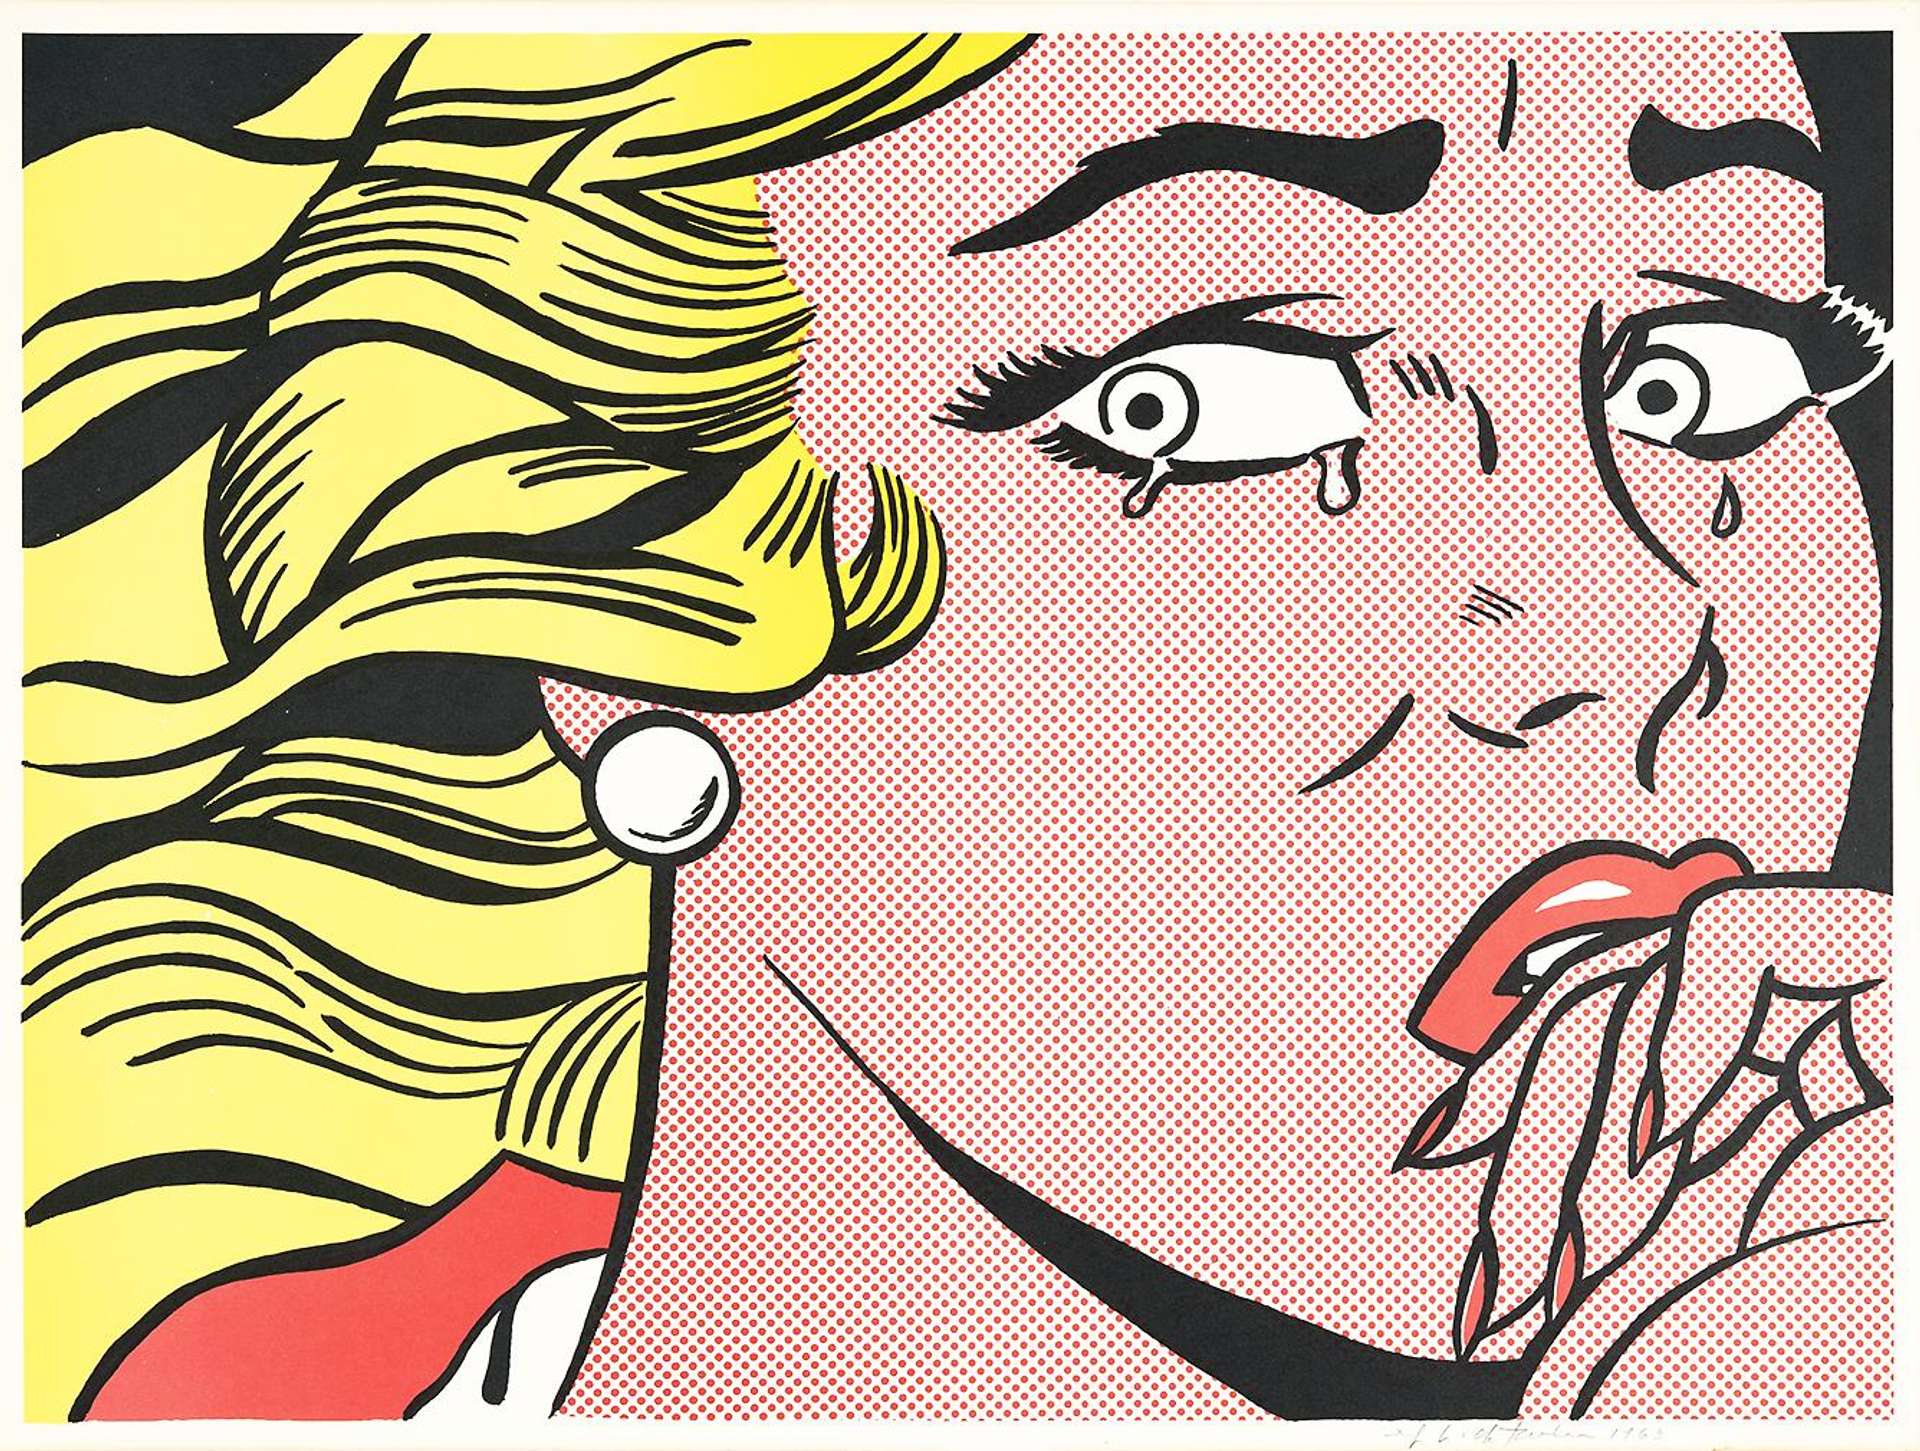 Crying Girl by Roy Lichtenstein - MyArtBroker